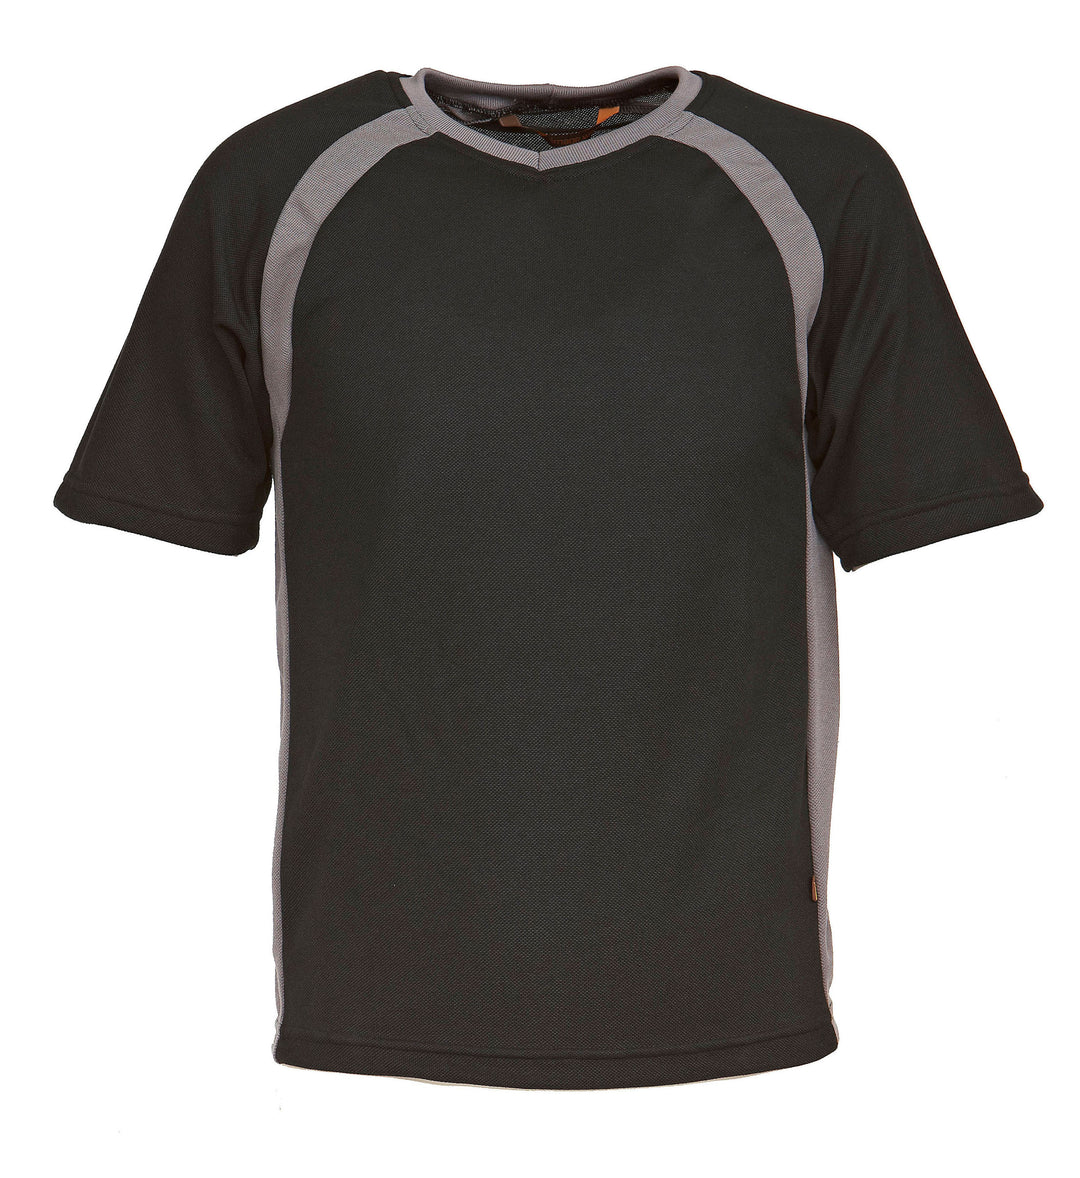 Musta lyhythihainen t-paita teknisestä materiaalista. Suora malli, pyöreä pääntie. Raglan-hiha. Edessä ylhäällä sekä sivulla harmaat kaistaleet.